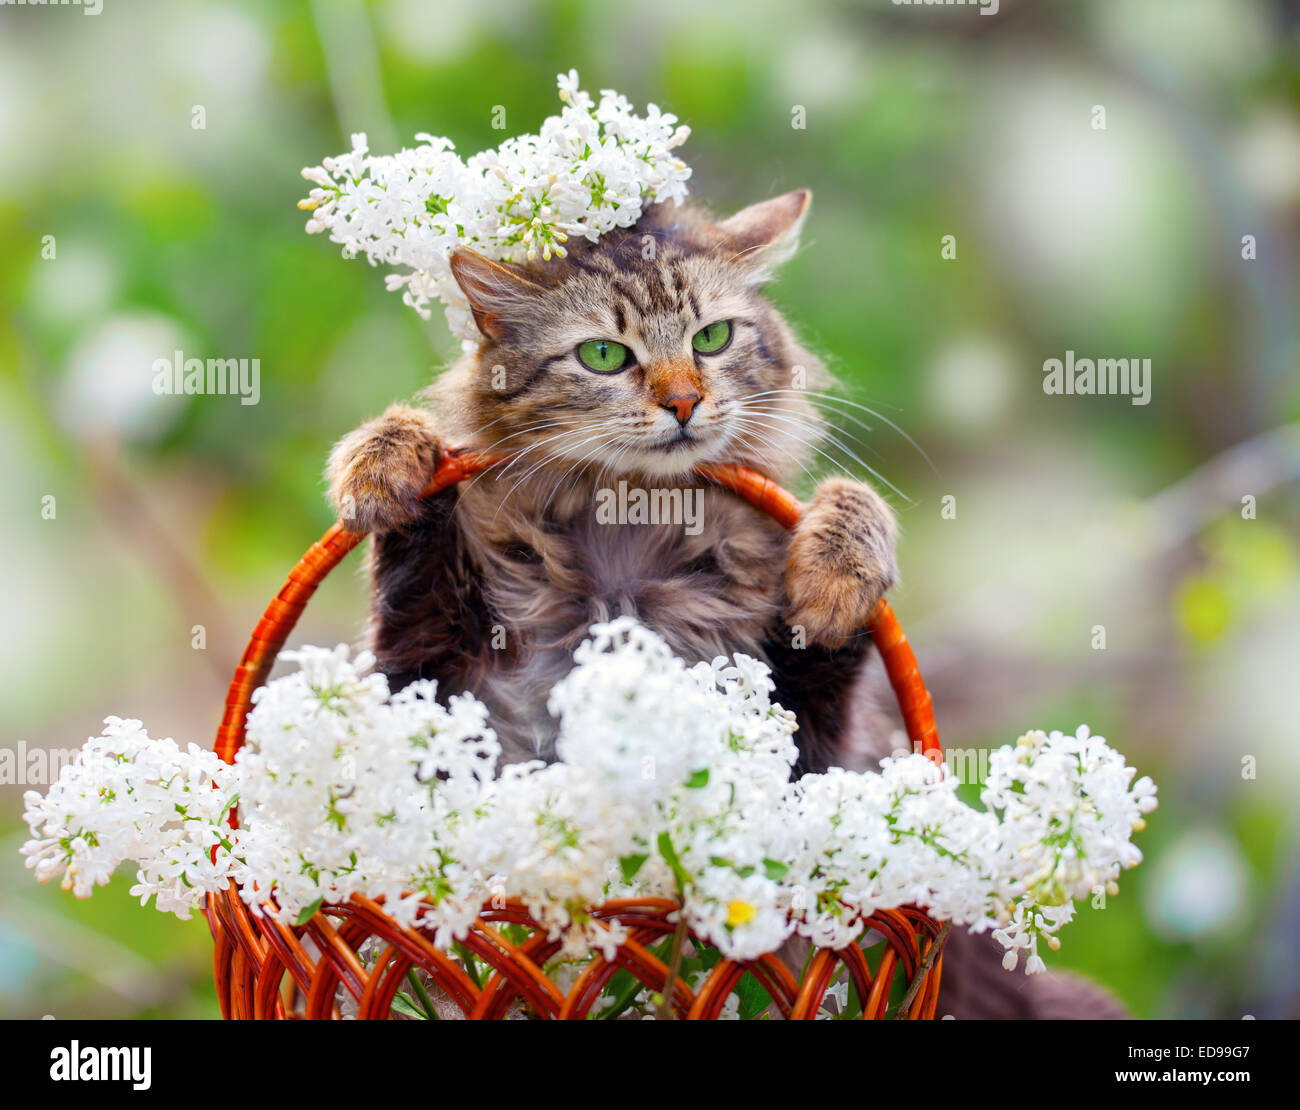 Cute cat in un cestello con bianco fiori lilla Foto Stock